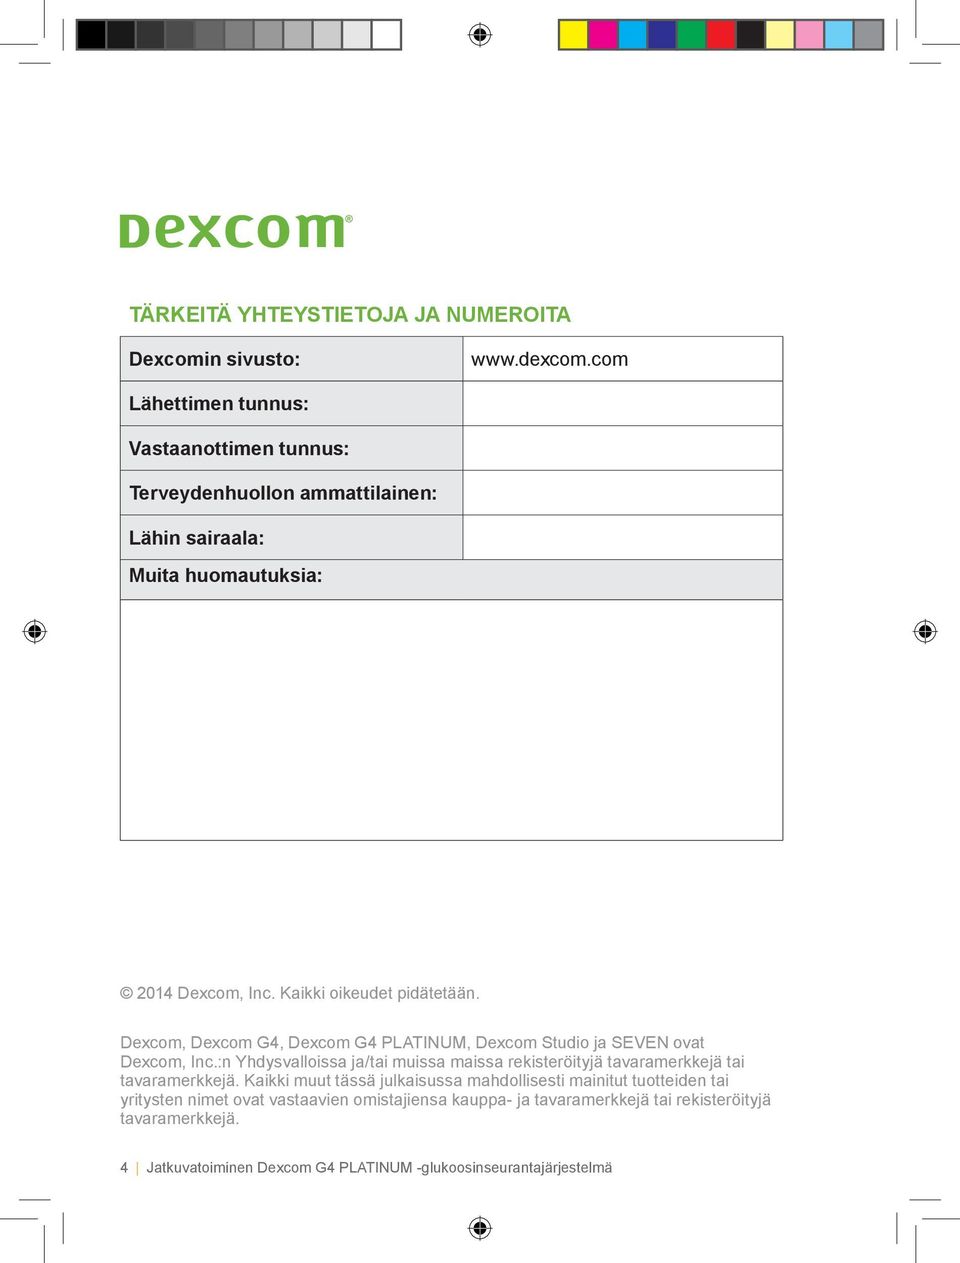 Dexcom, Dexcom G4, Dexcom G4 PLATINUM, Dexcom Studio ja SEVEN ovat Dexcom, Inc.